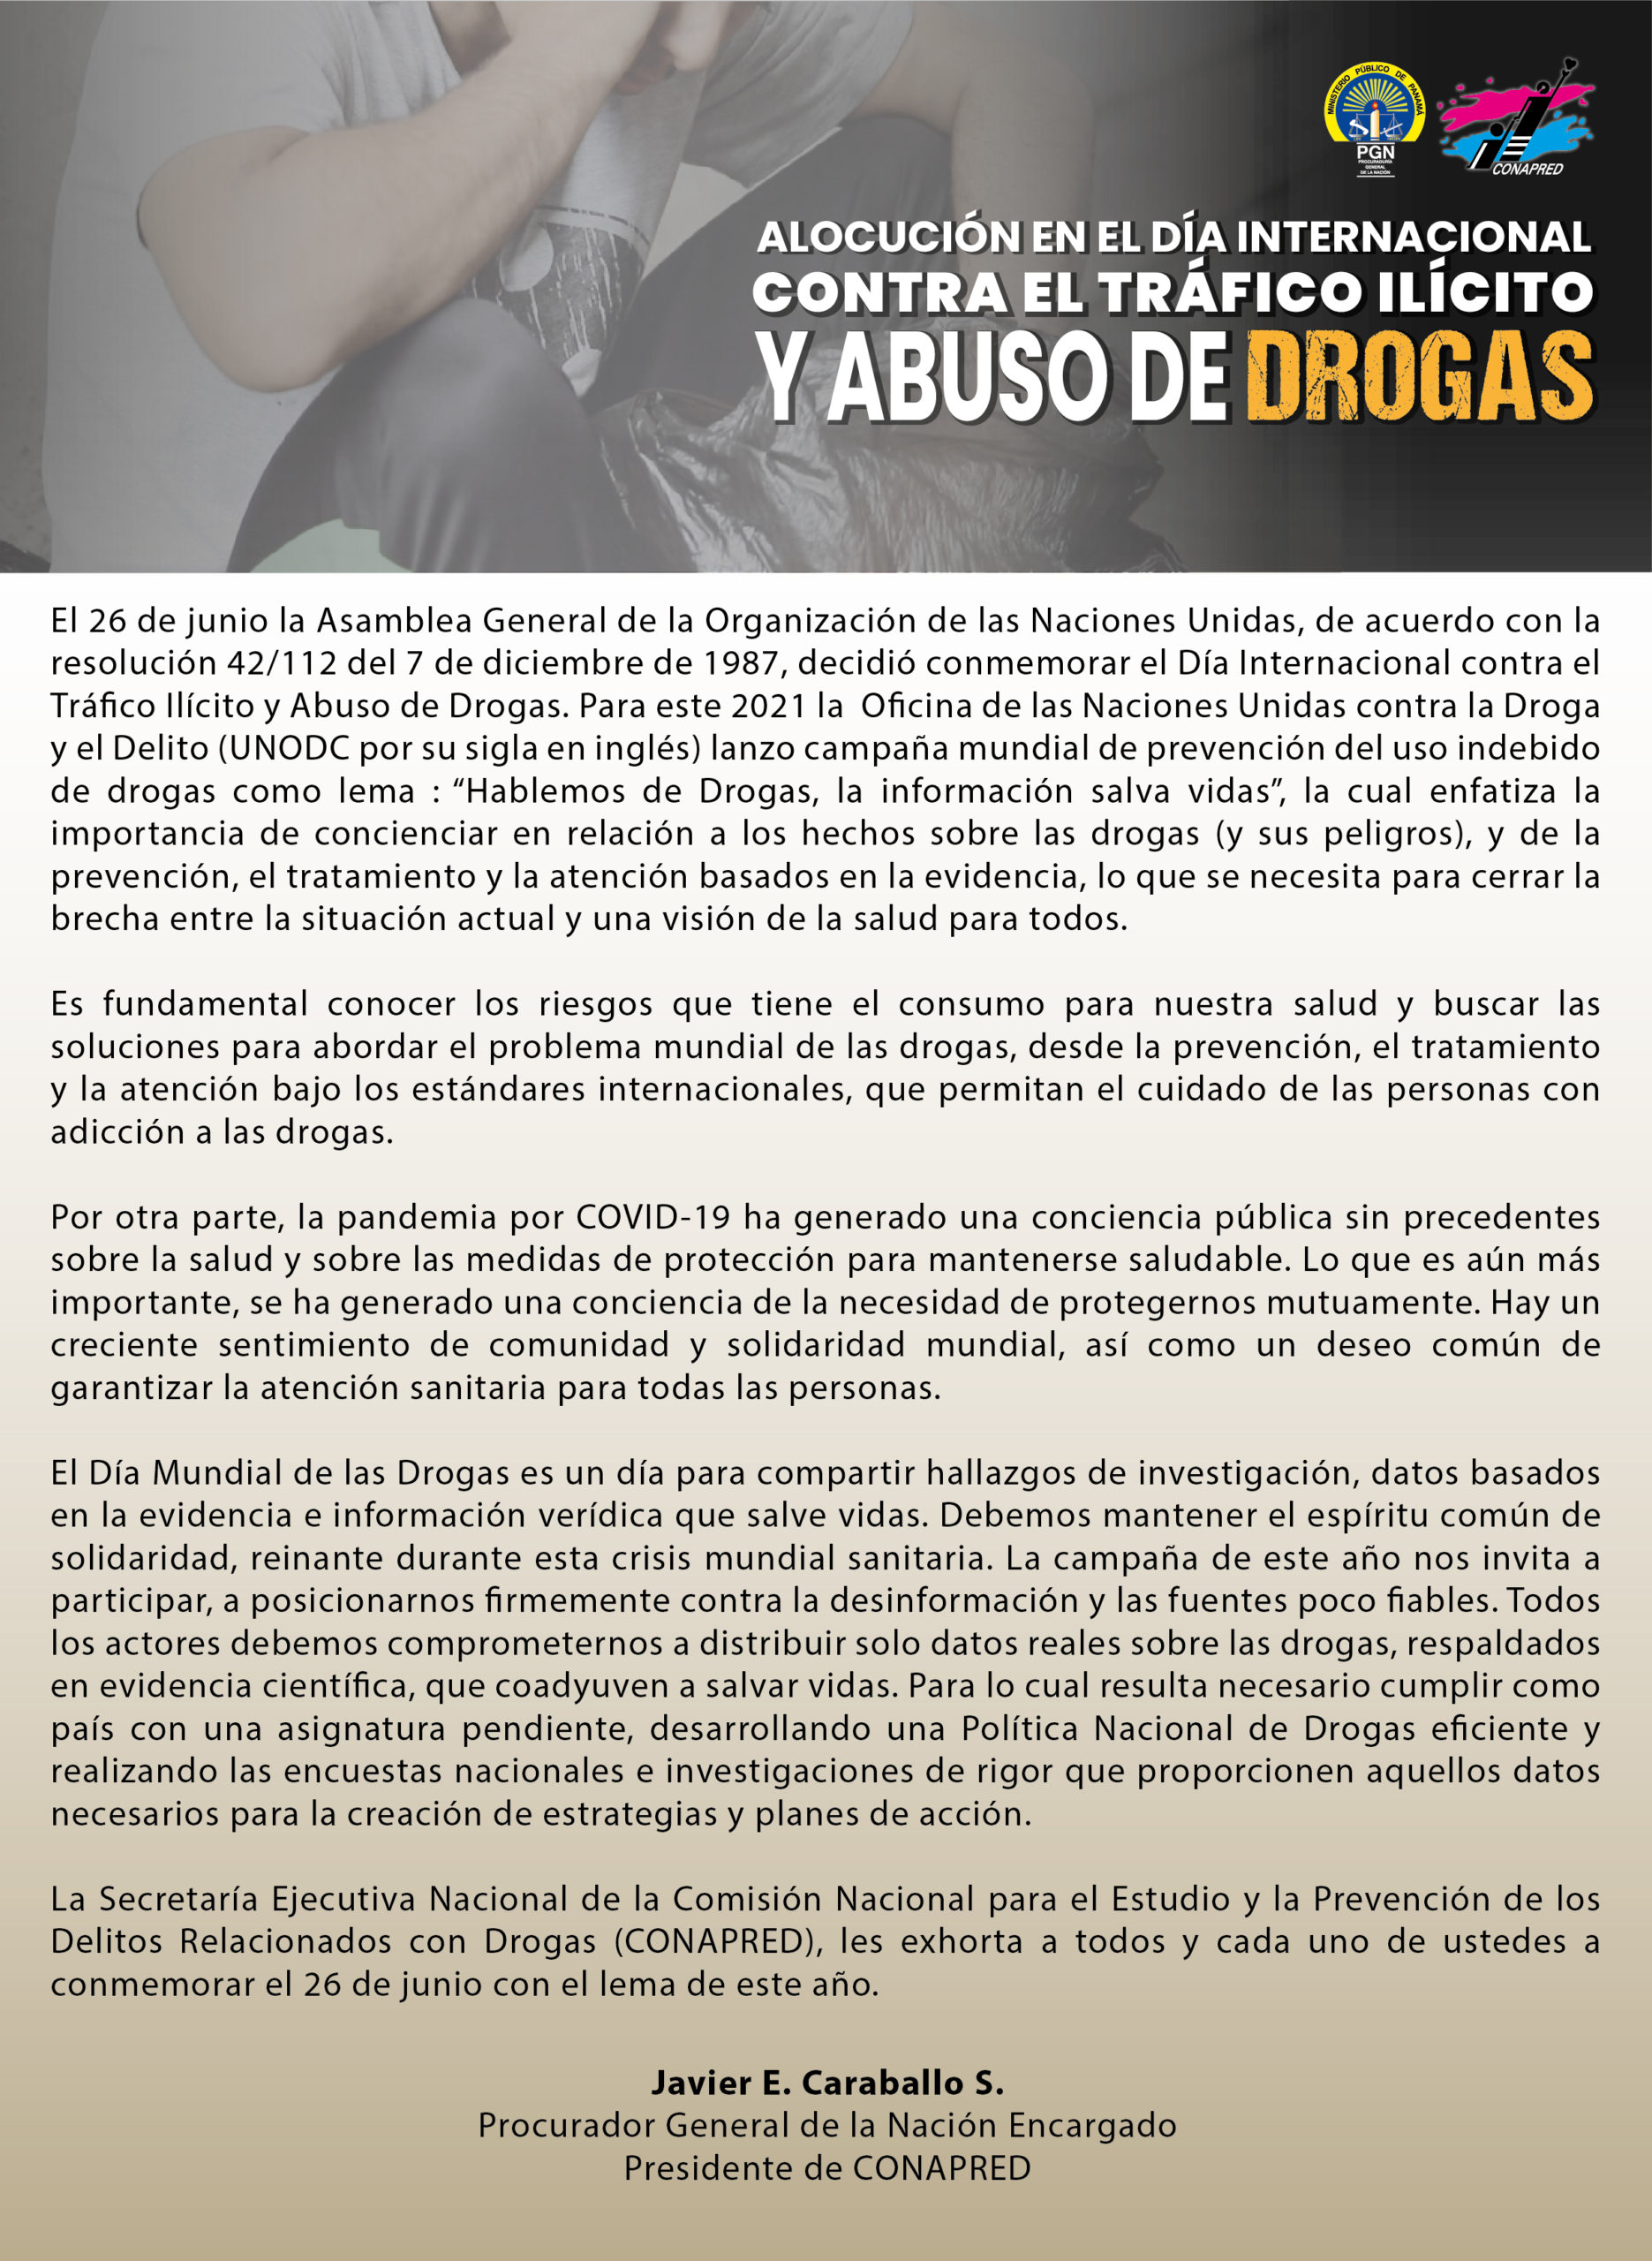 Alocución del Señor Procurador de la Nación encargado y Presidente de la CONAPRED al conmemorarse el Día Internacional Contra el Tráfico ilícito y Abuso de Drogas